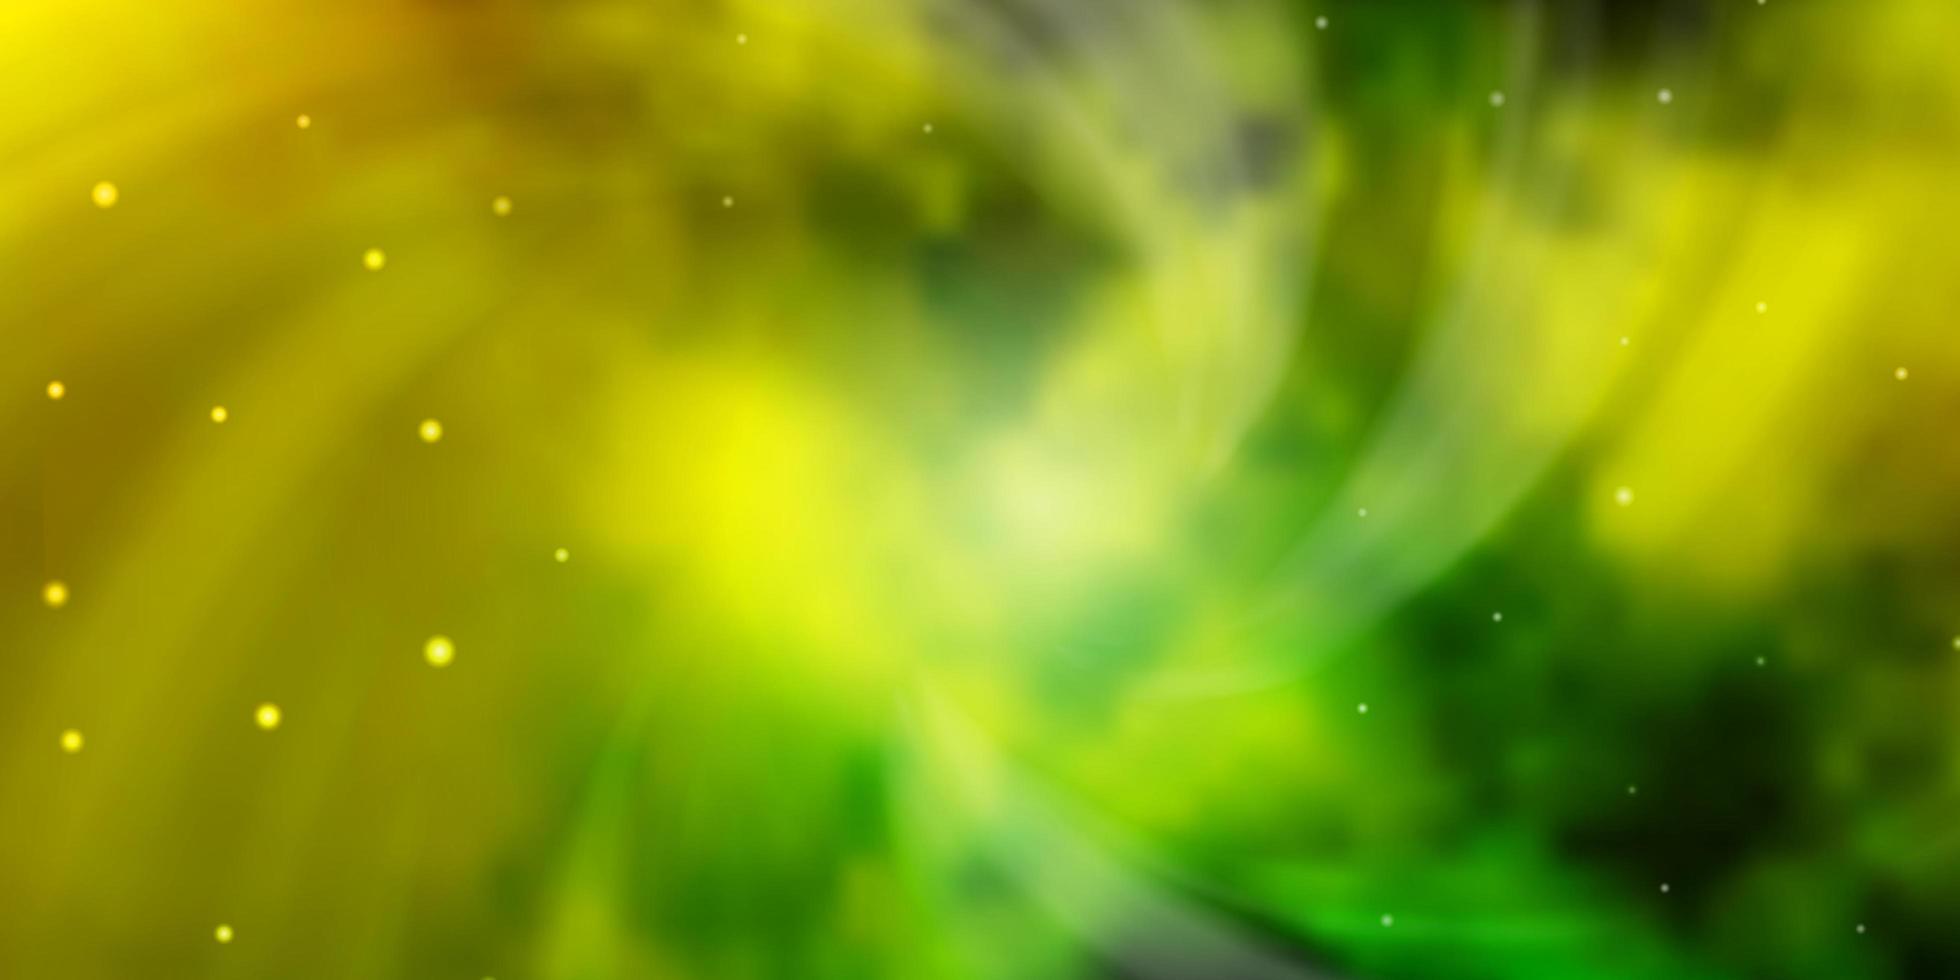 modelo de vetor verde e amarelo claro com estrelas de néon. ilustração colorida em estilo abstrato com estrelas gradientes. tema para telefones celulares.